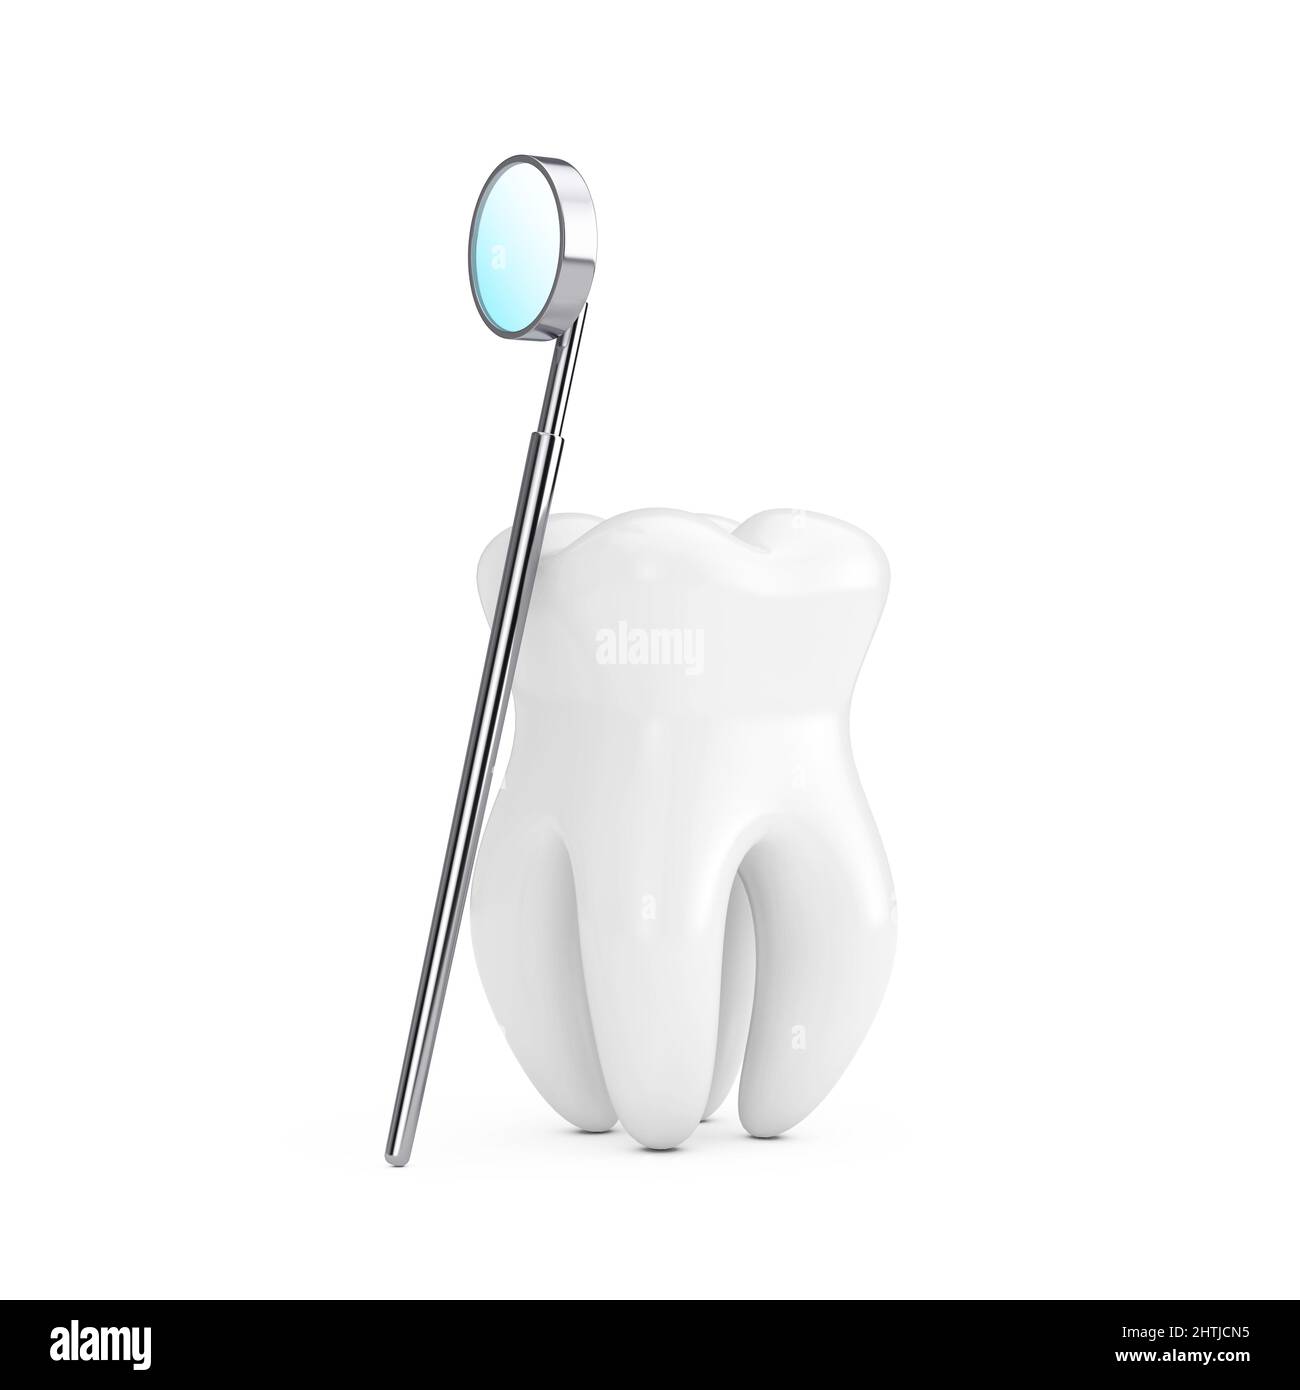 Representación realista del espejo bucal 3d elemento de diseño de concepto  dental y de salud modelo de herramienta dental